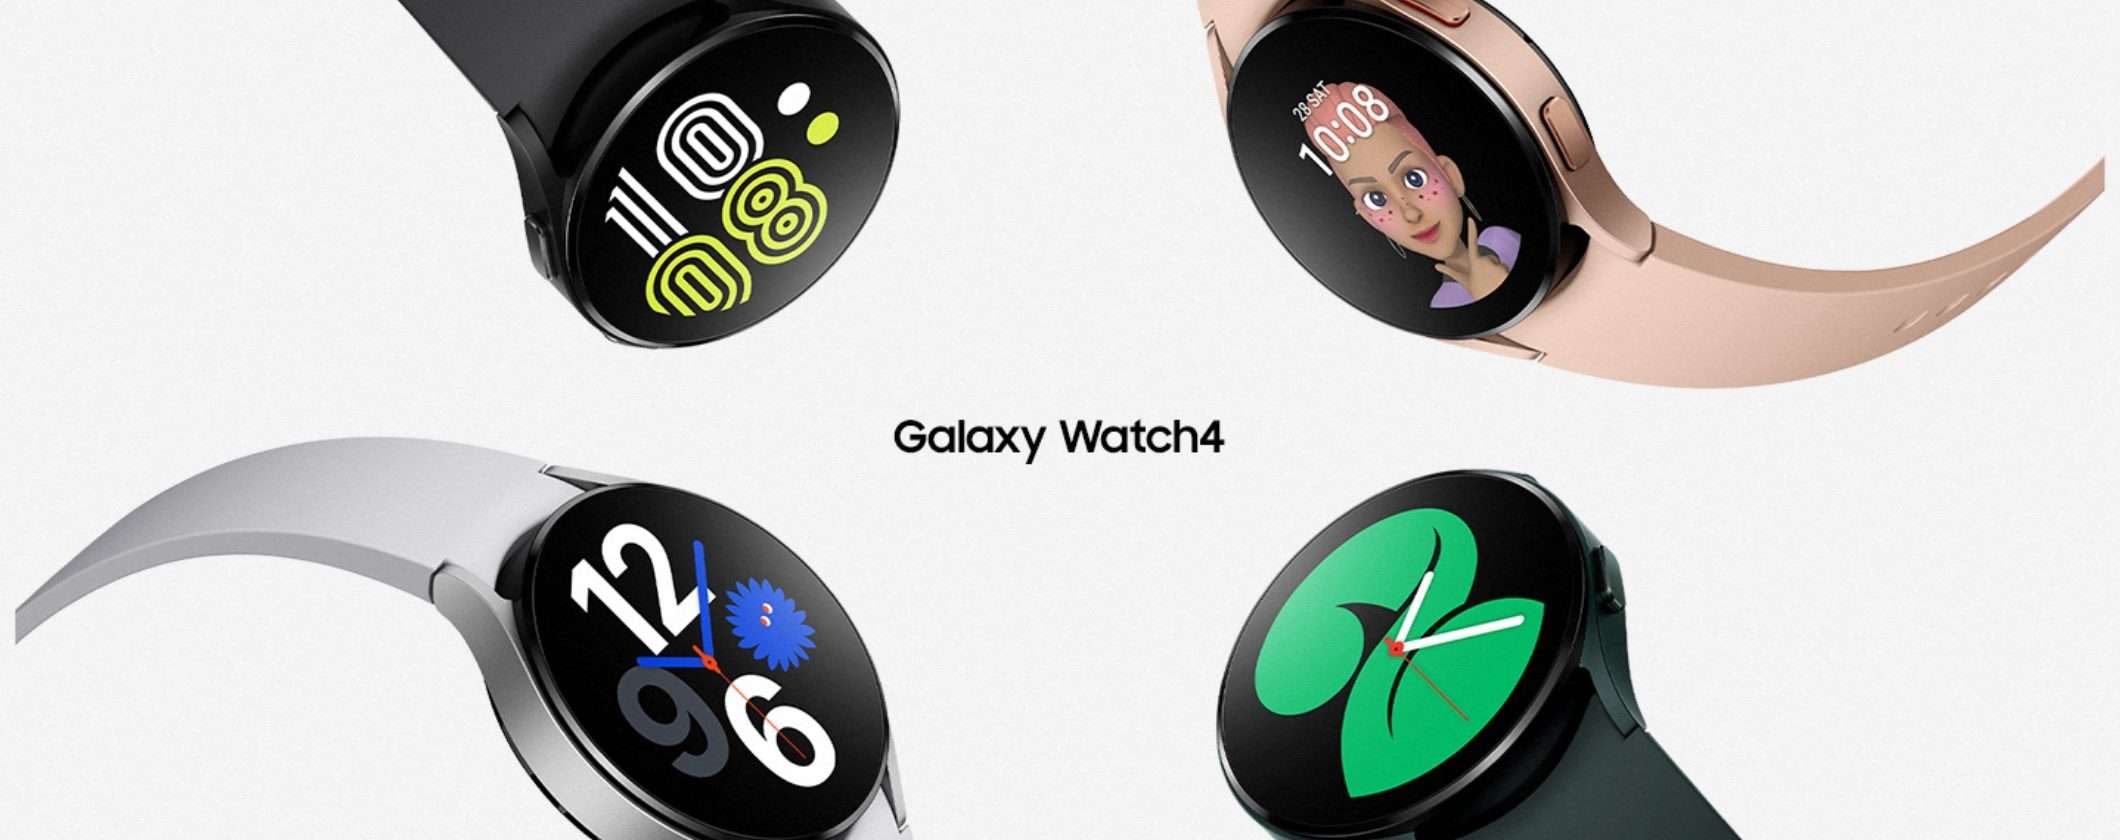 Samsung Galaxy Watch4: best buy al miglior prezzo di sempre